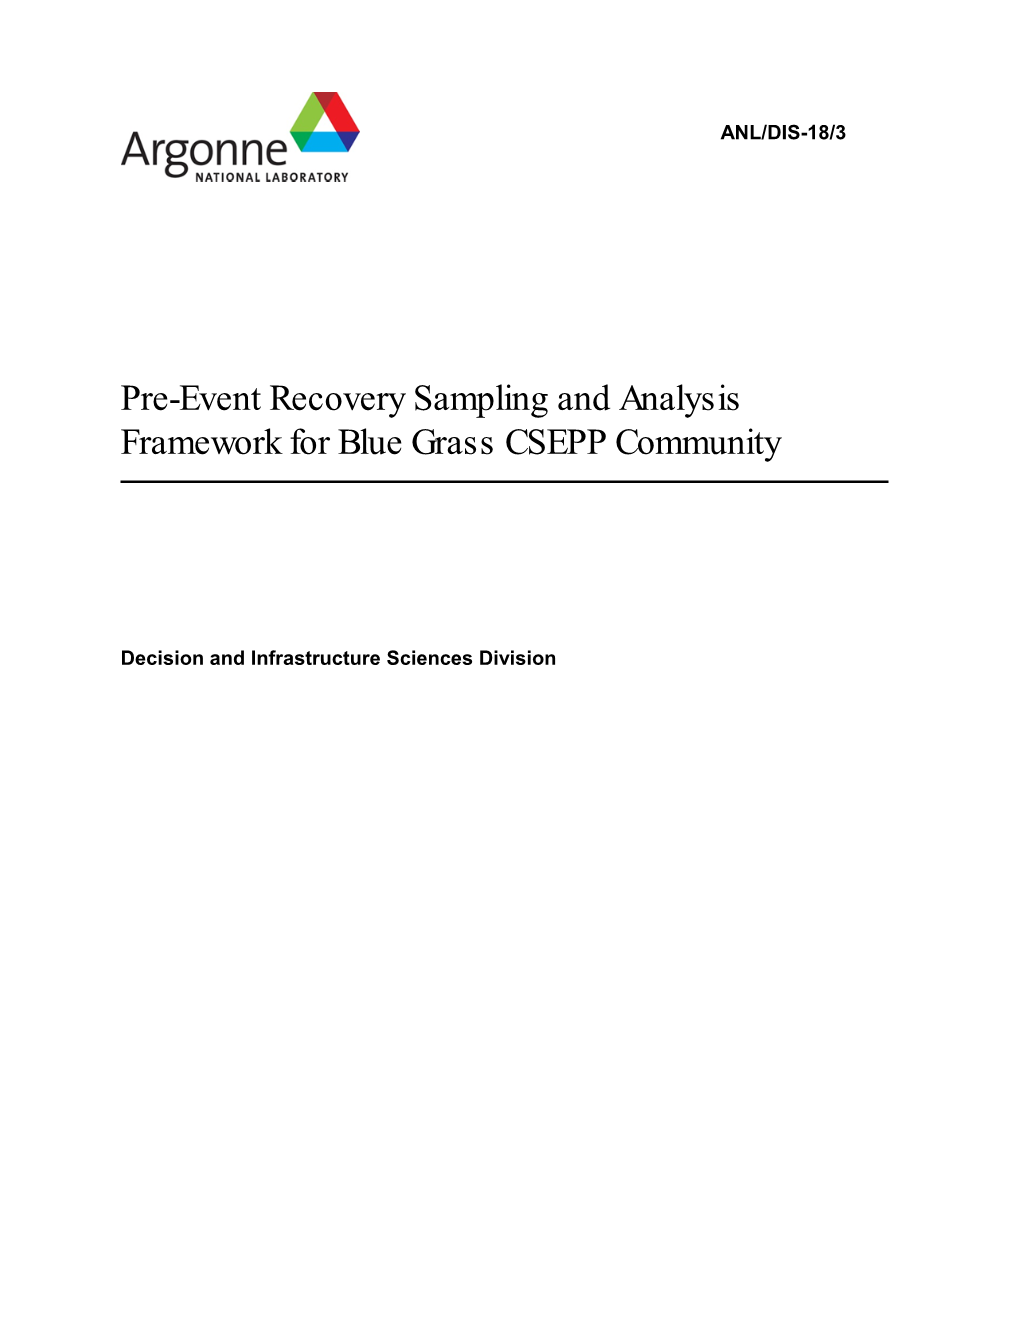 Pre-Event Recovery Sampling and Analysis Framework for Blue Grass CSEPP Community